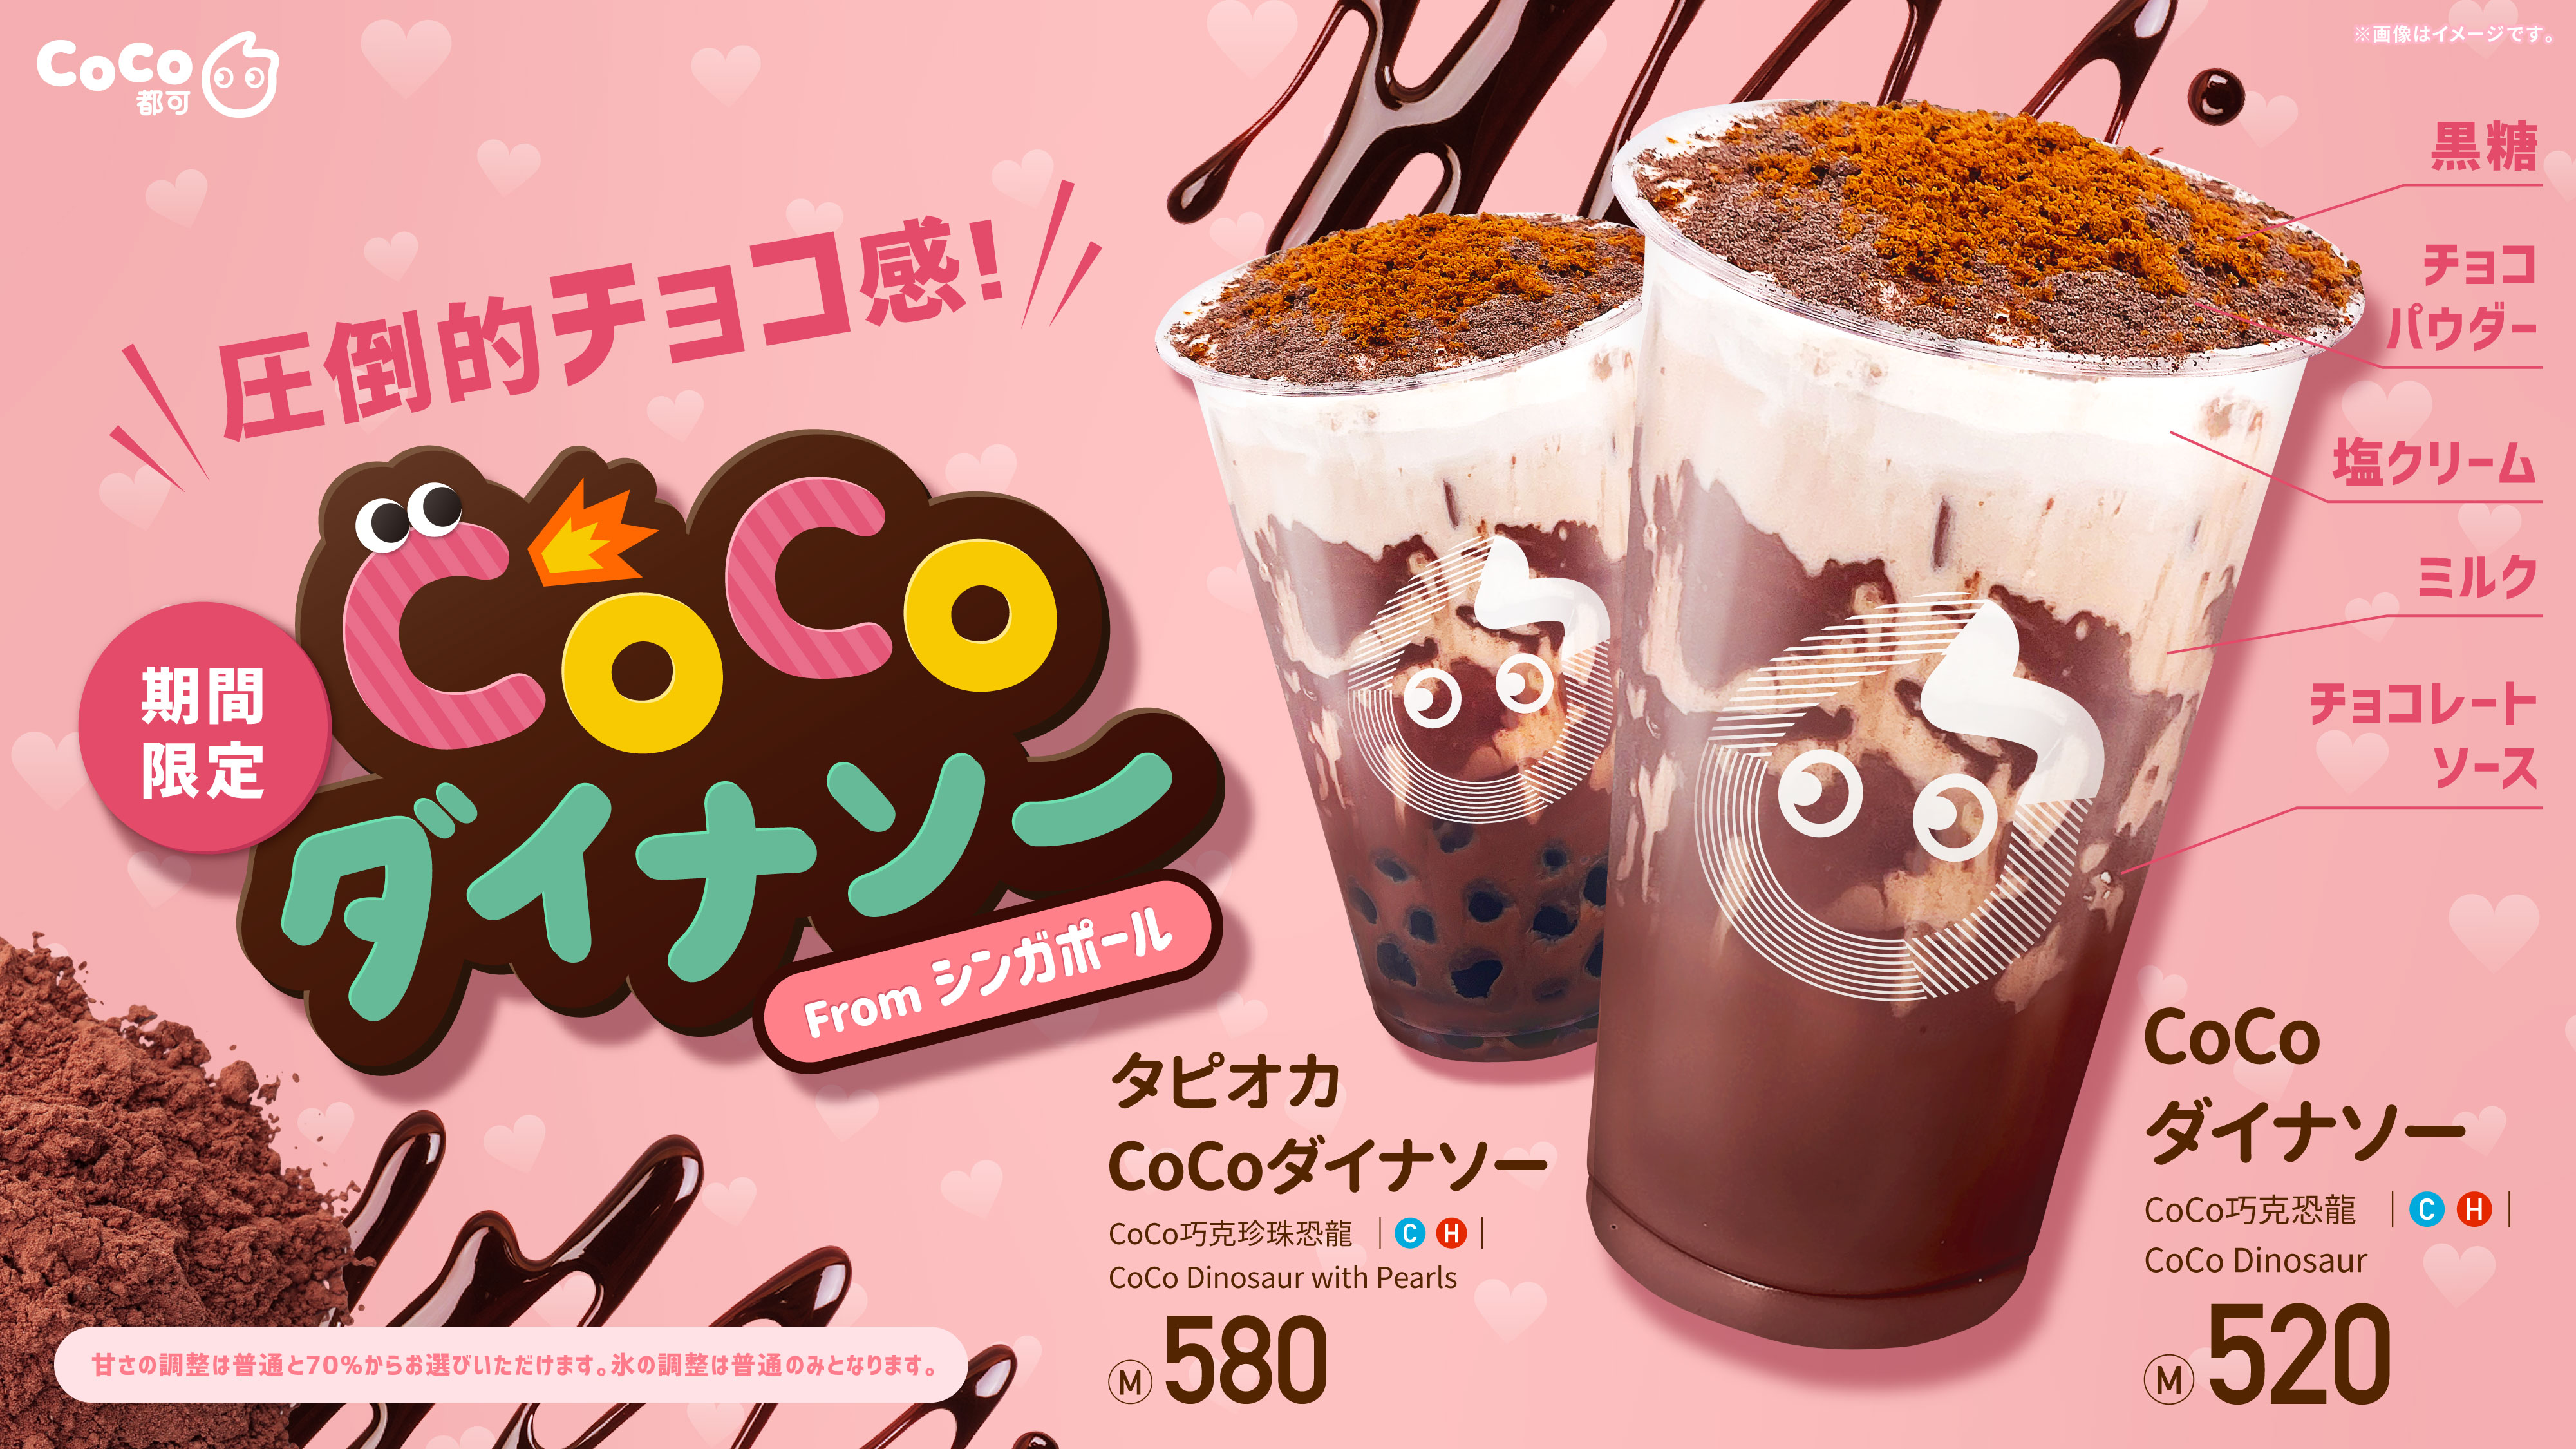 【期間限定】CoCo史上最高に濃厚チョコレート「CoCoダイナソー」日本初上陸🍫🧡